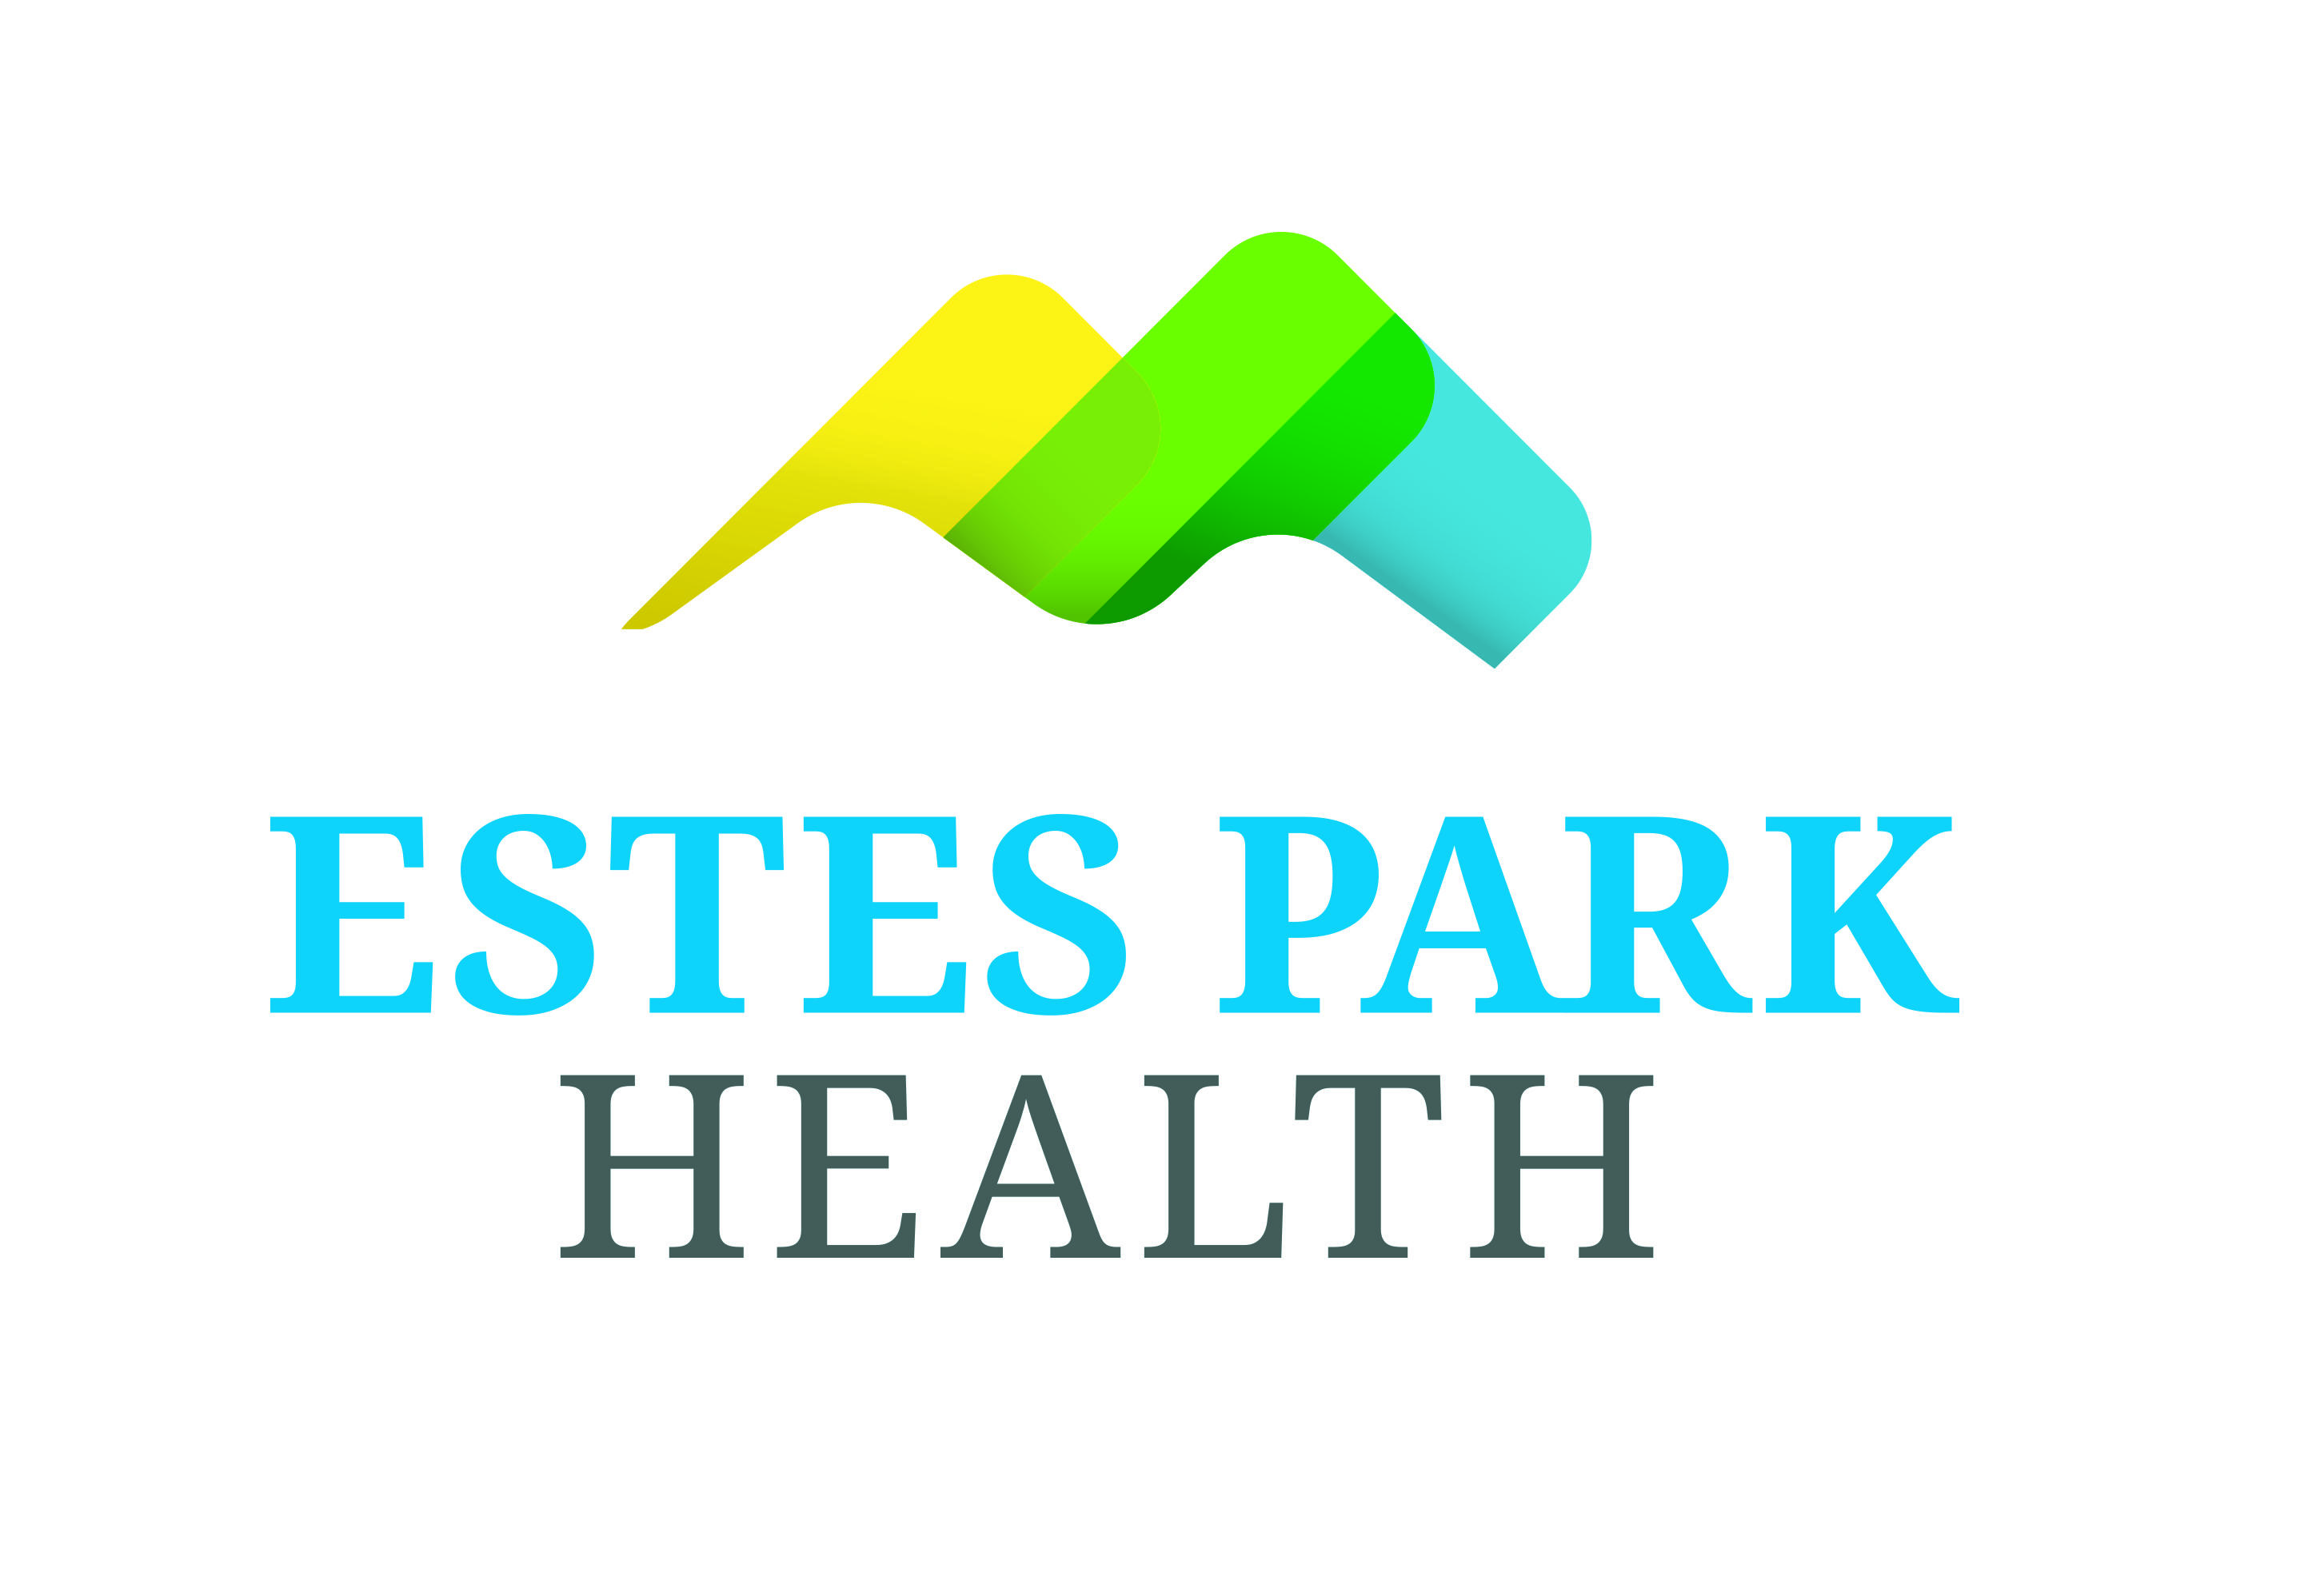 Estes Park health logo